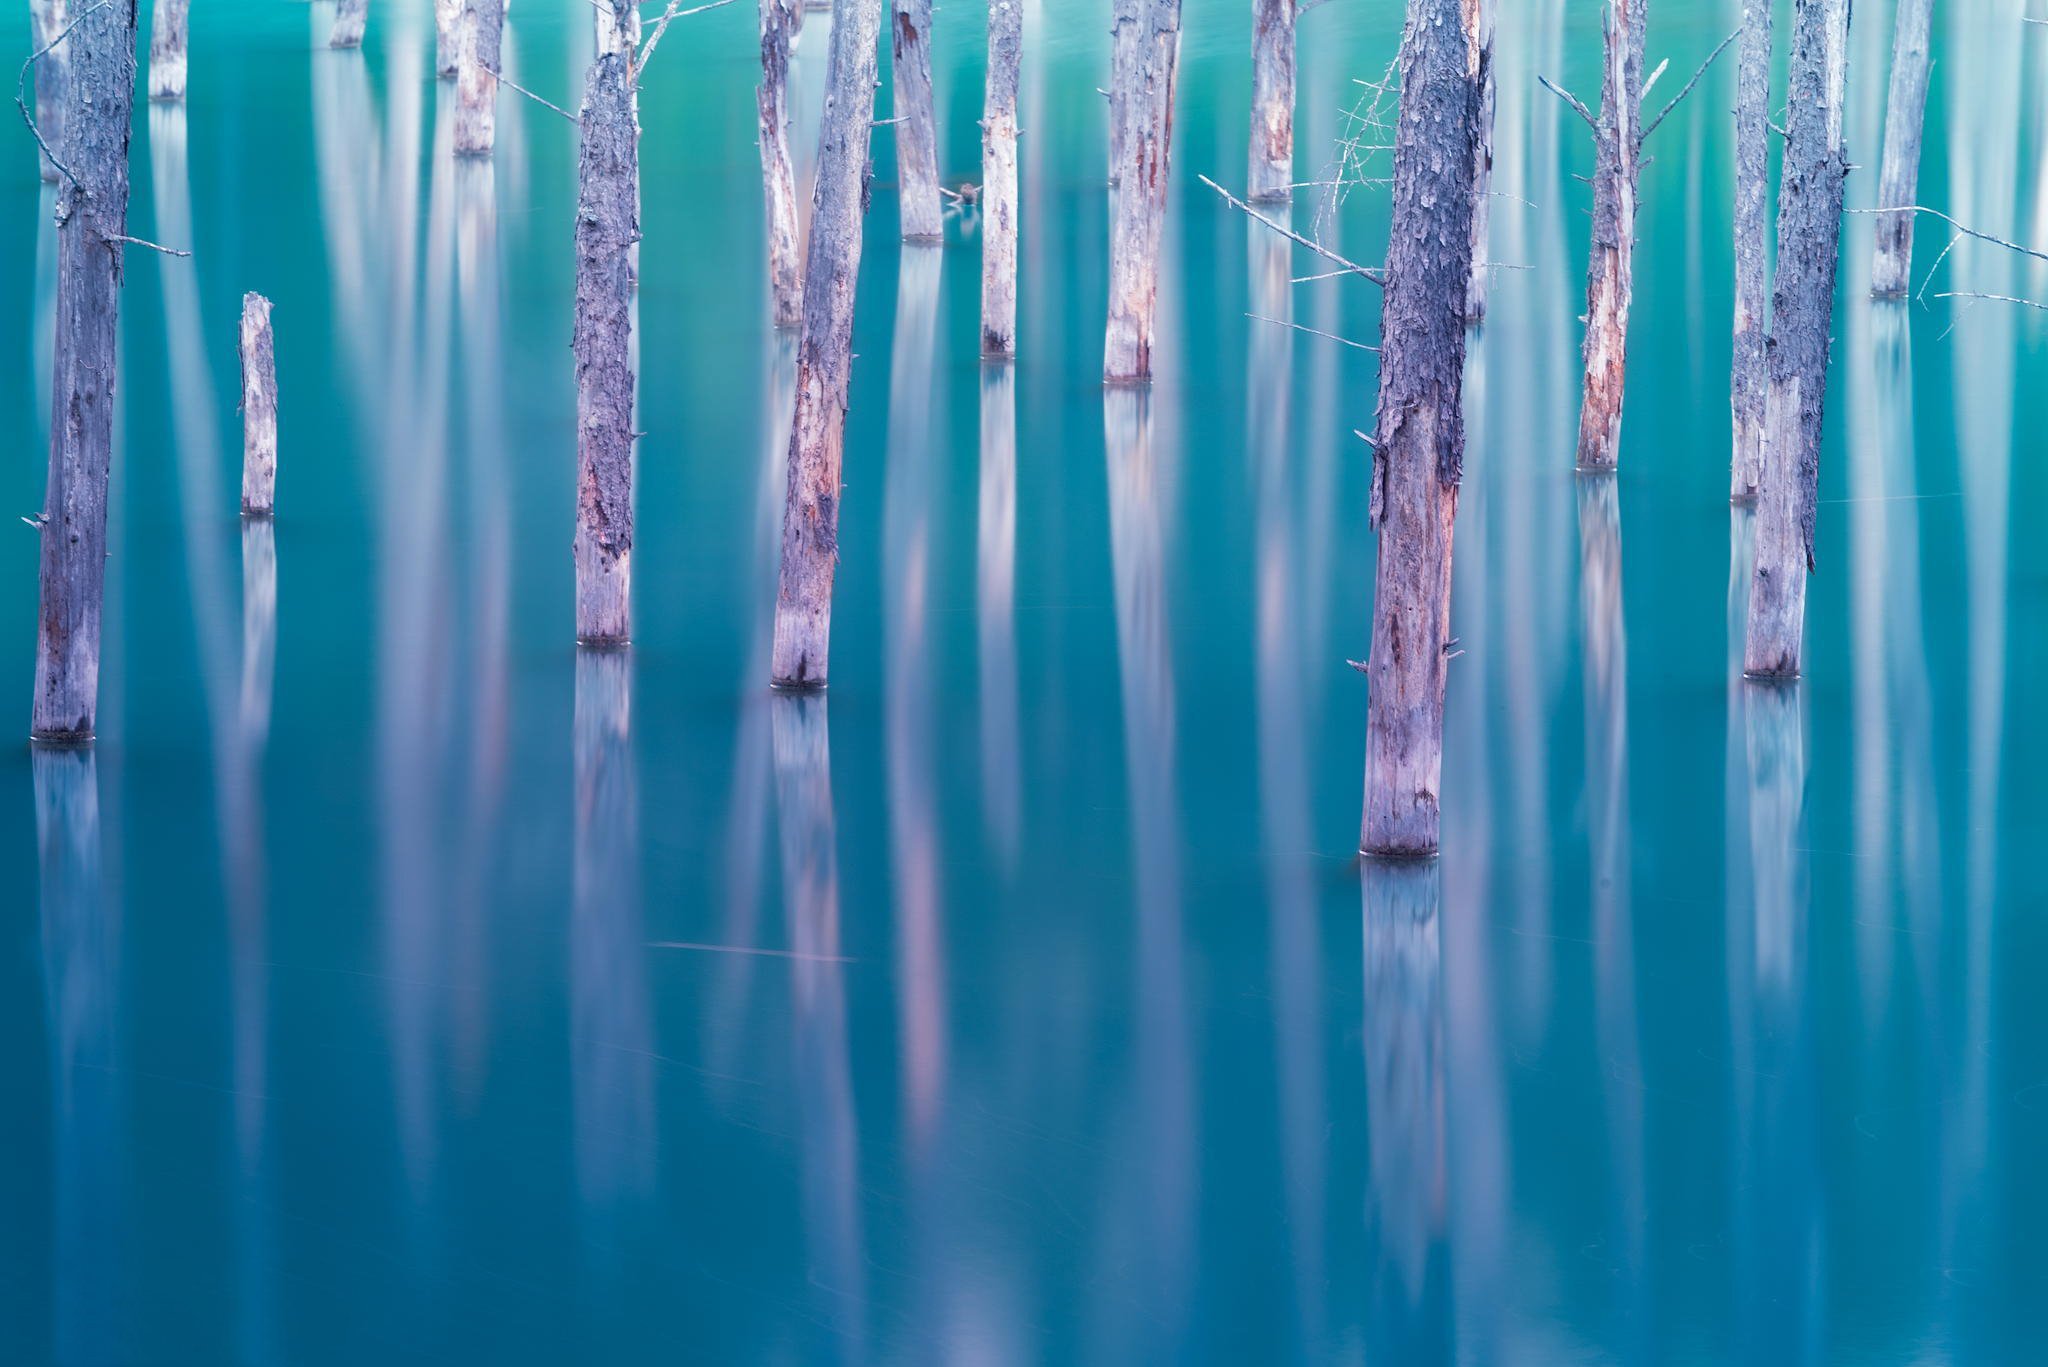 Деревья залитые водой. Голубой лес Японии. Зеркальное озеро в Японии. Картинка много деревьев залитых водой. Yamamura, Japan.